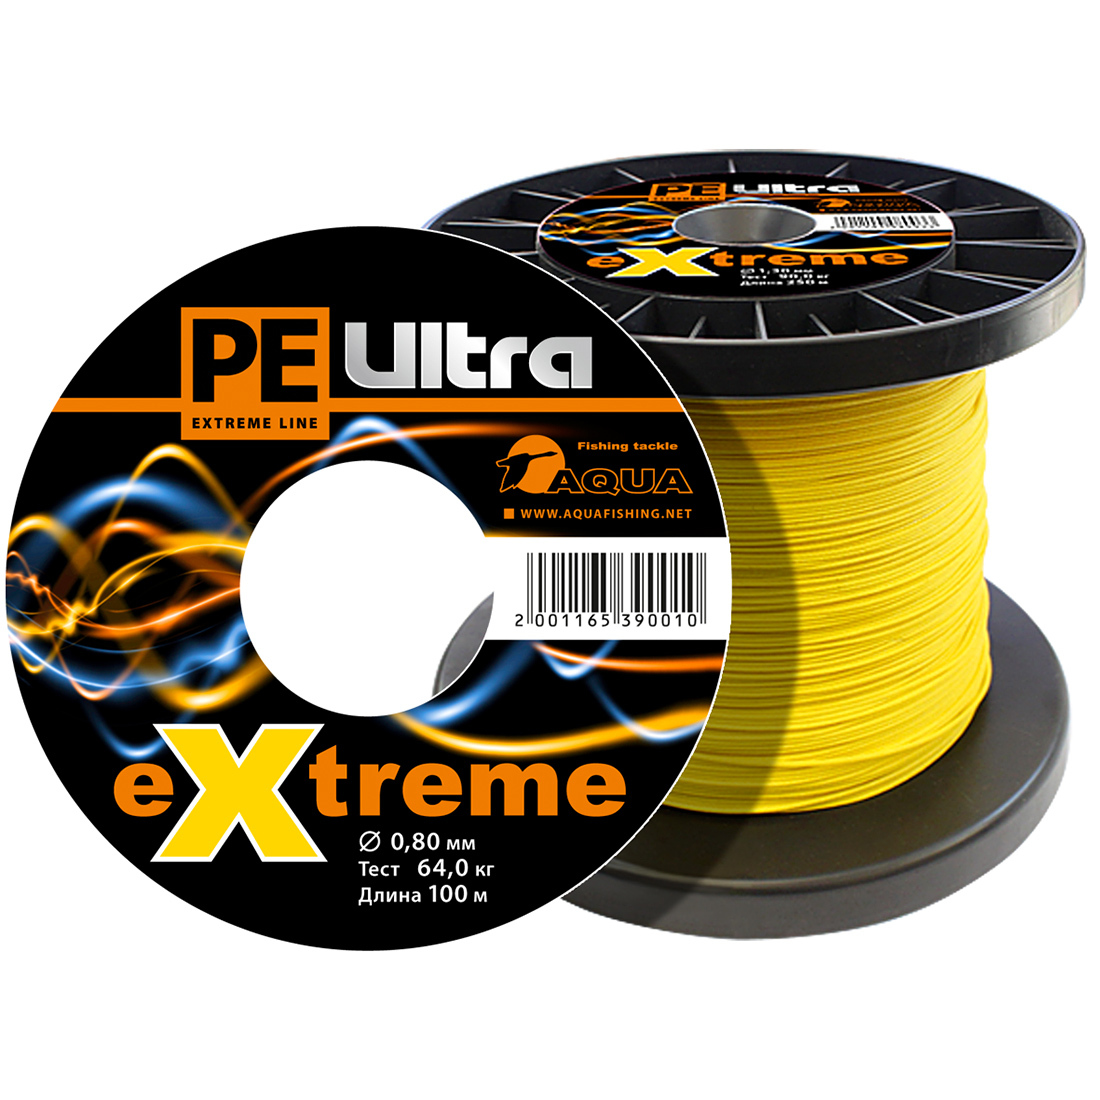 Плетеный Шнур Для Рыбалки Aqua Pe Ultra Extreme 0,80mm (Цвет Желтый) 100m